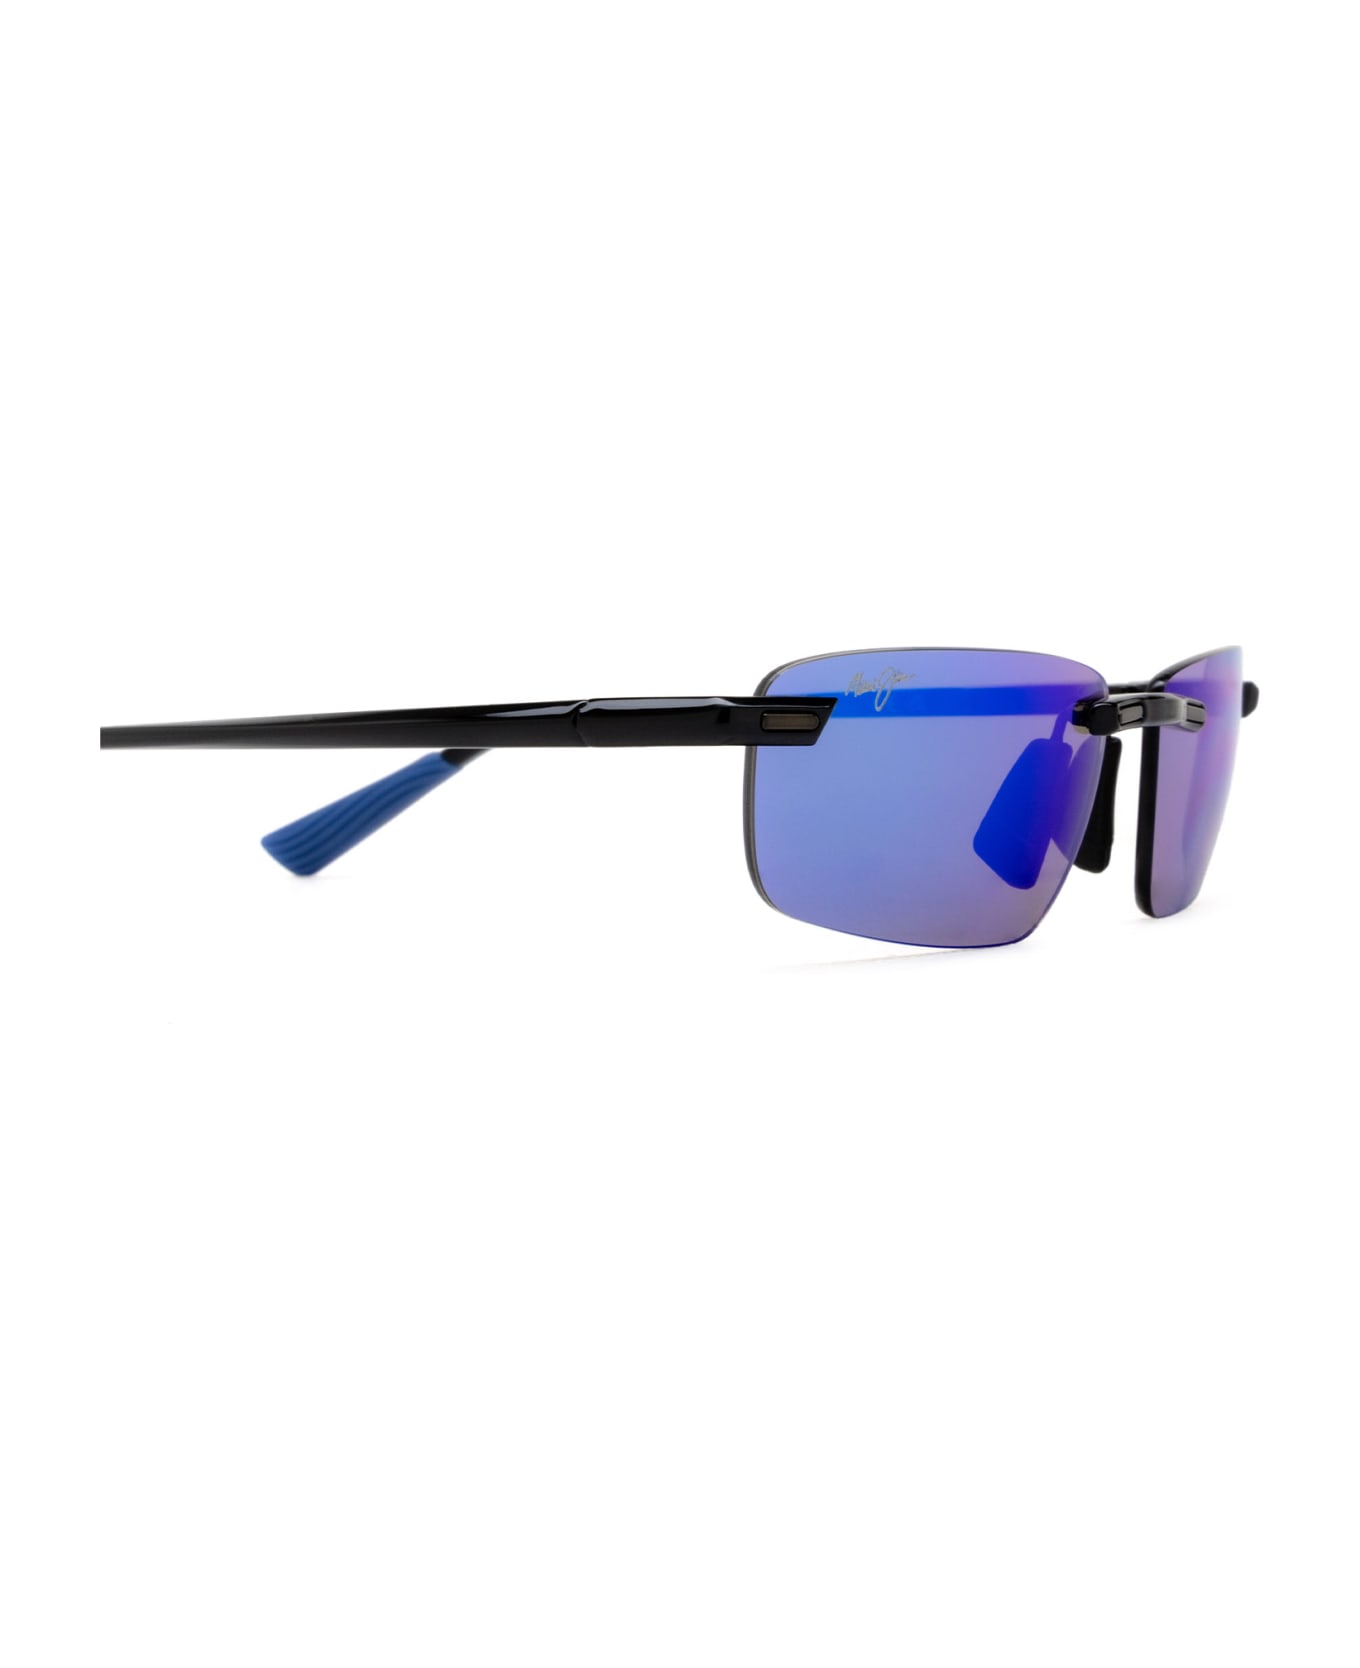 Maui Jim Mj630 Shiny Black W/ Blue Sunglasses - Shiny Black W/ Blue